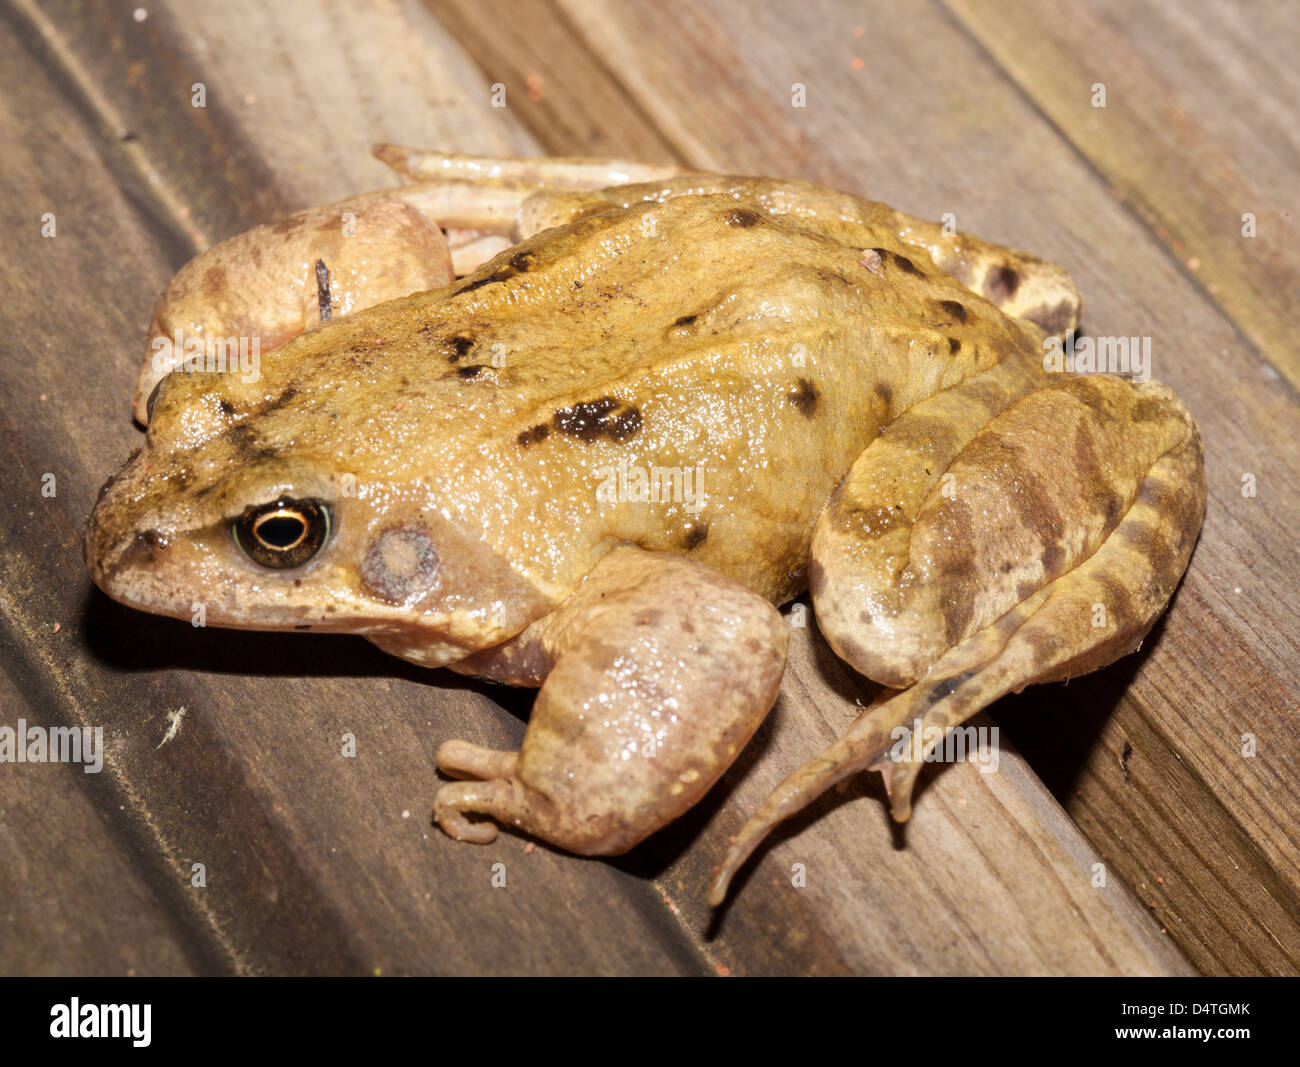 Ravvicinata di una rana comune Foto Stock